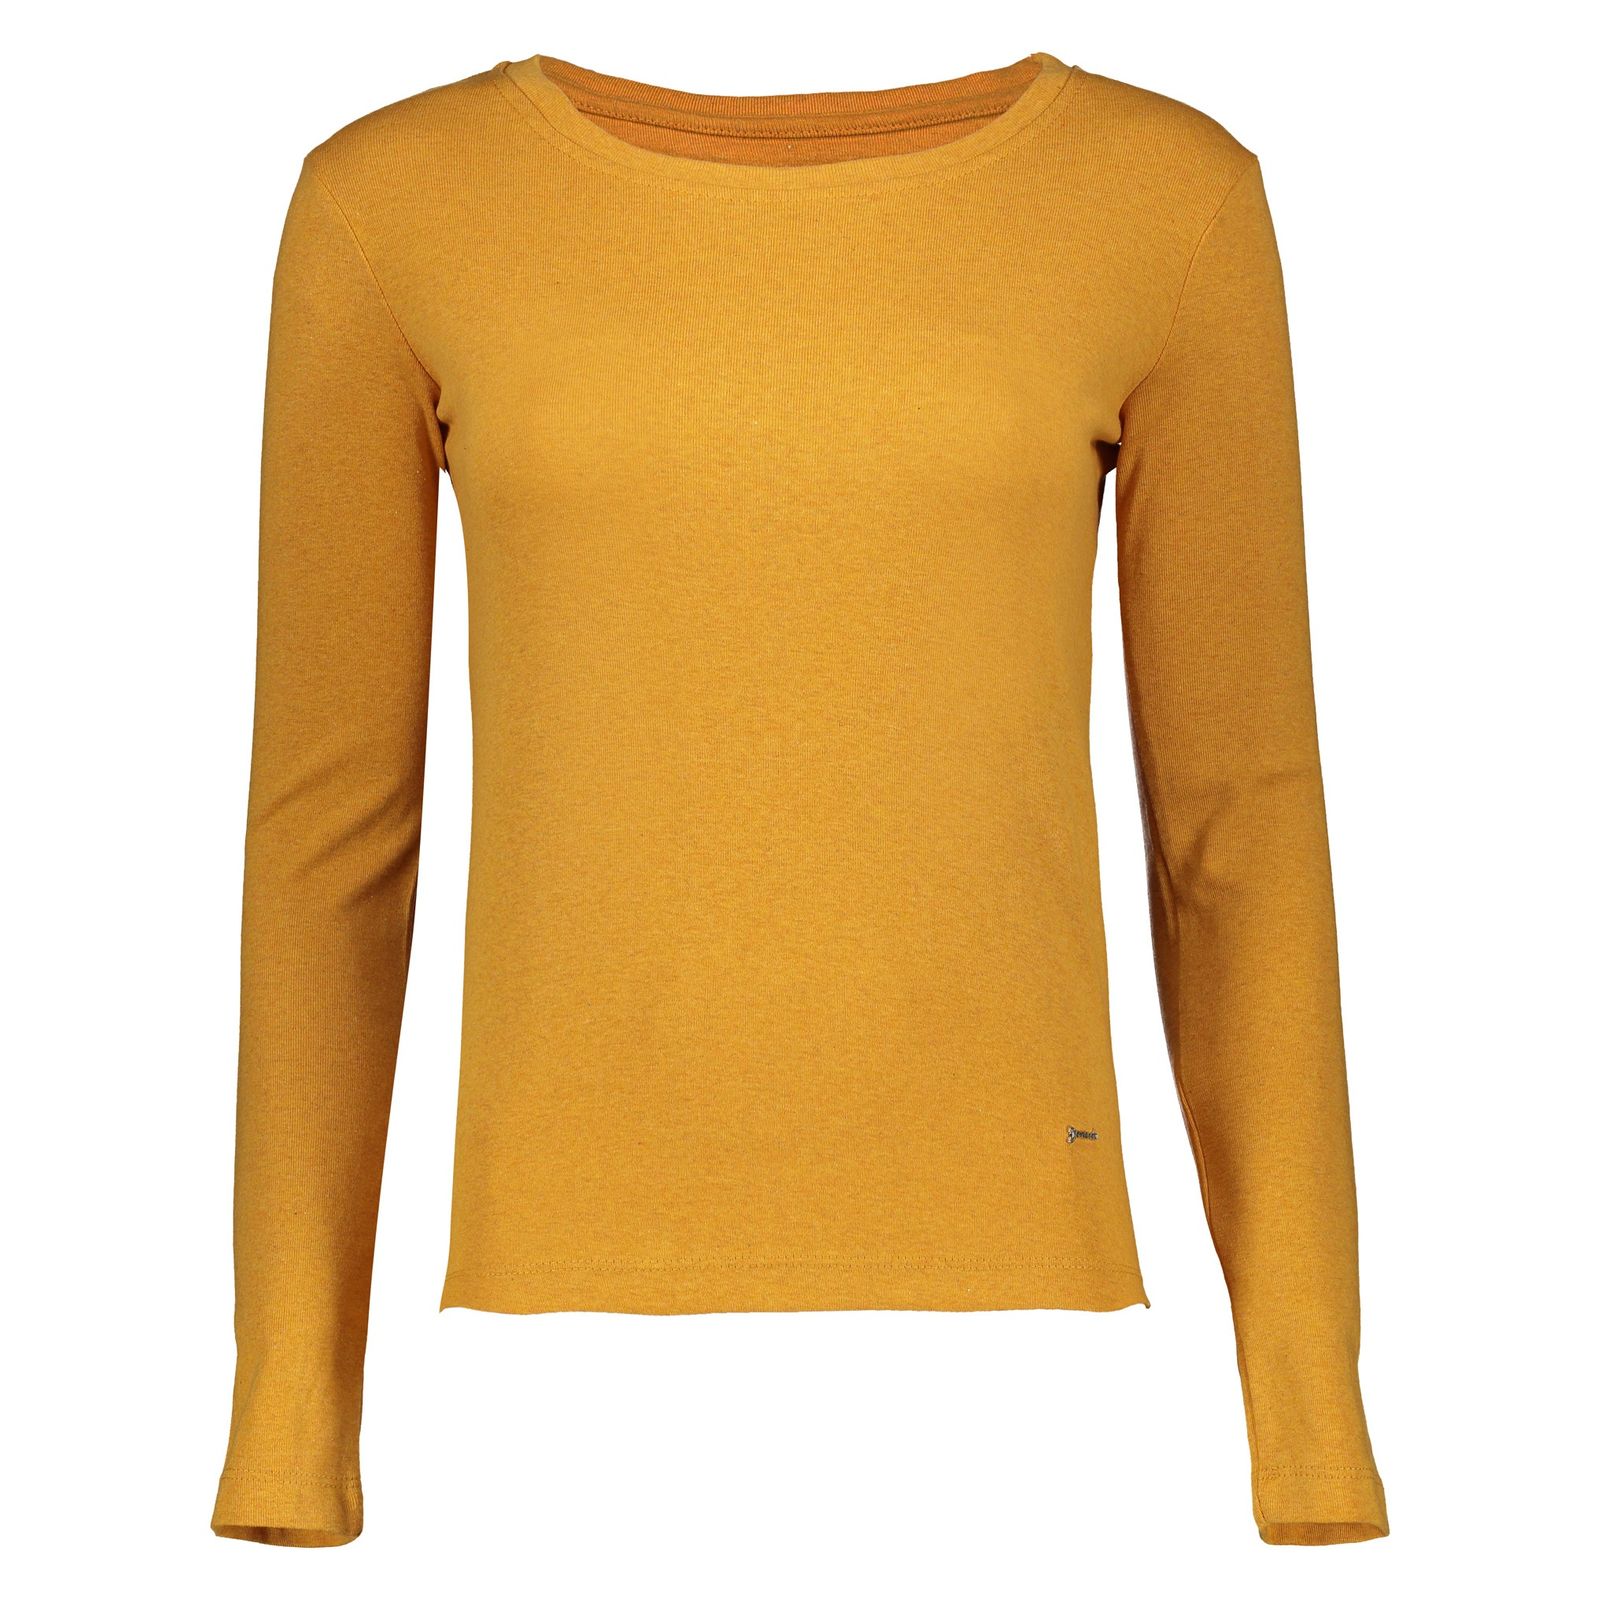 تی شرت زنانه گارودی مدل 1003107001-16 - نارنجی - 2